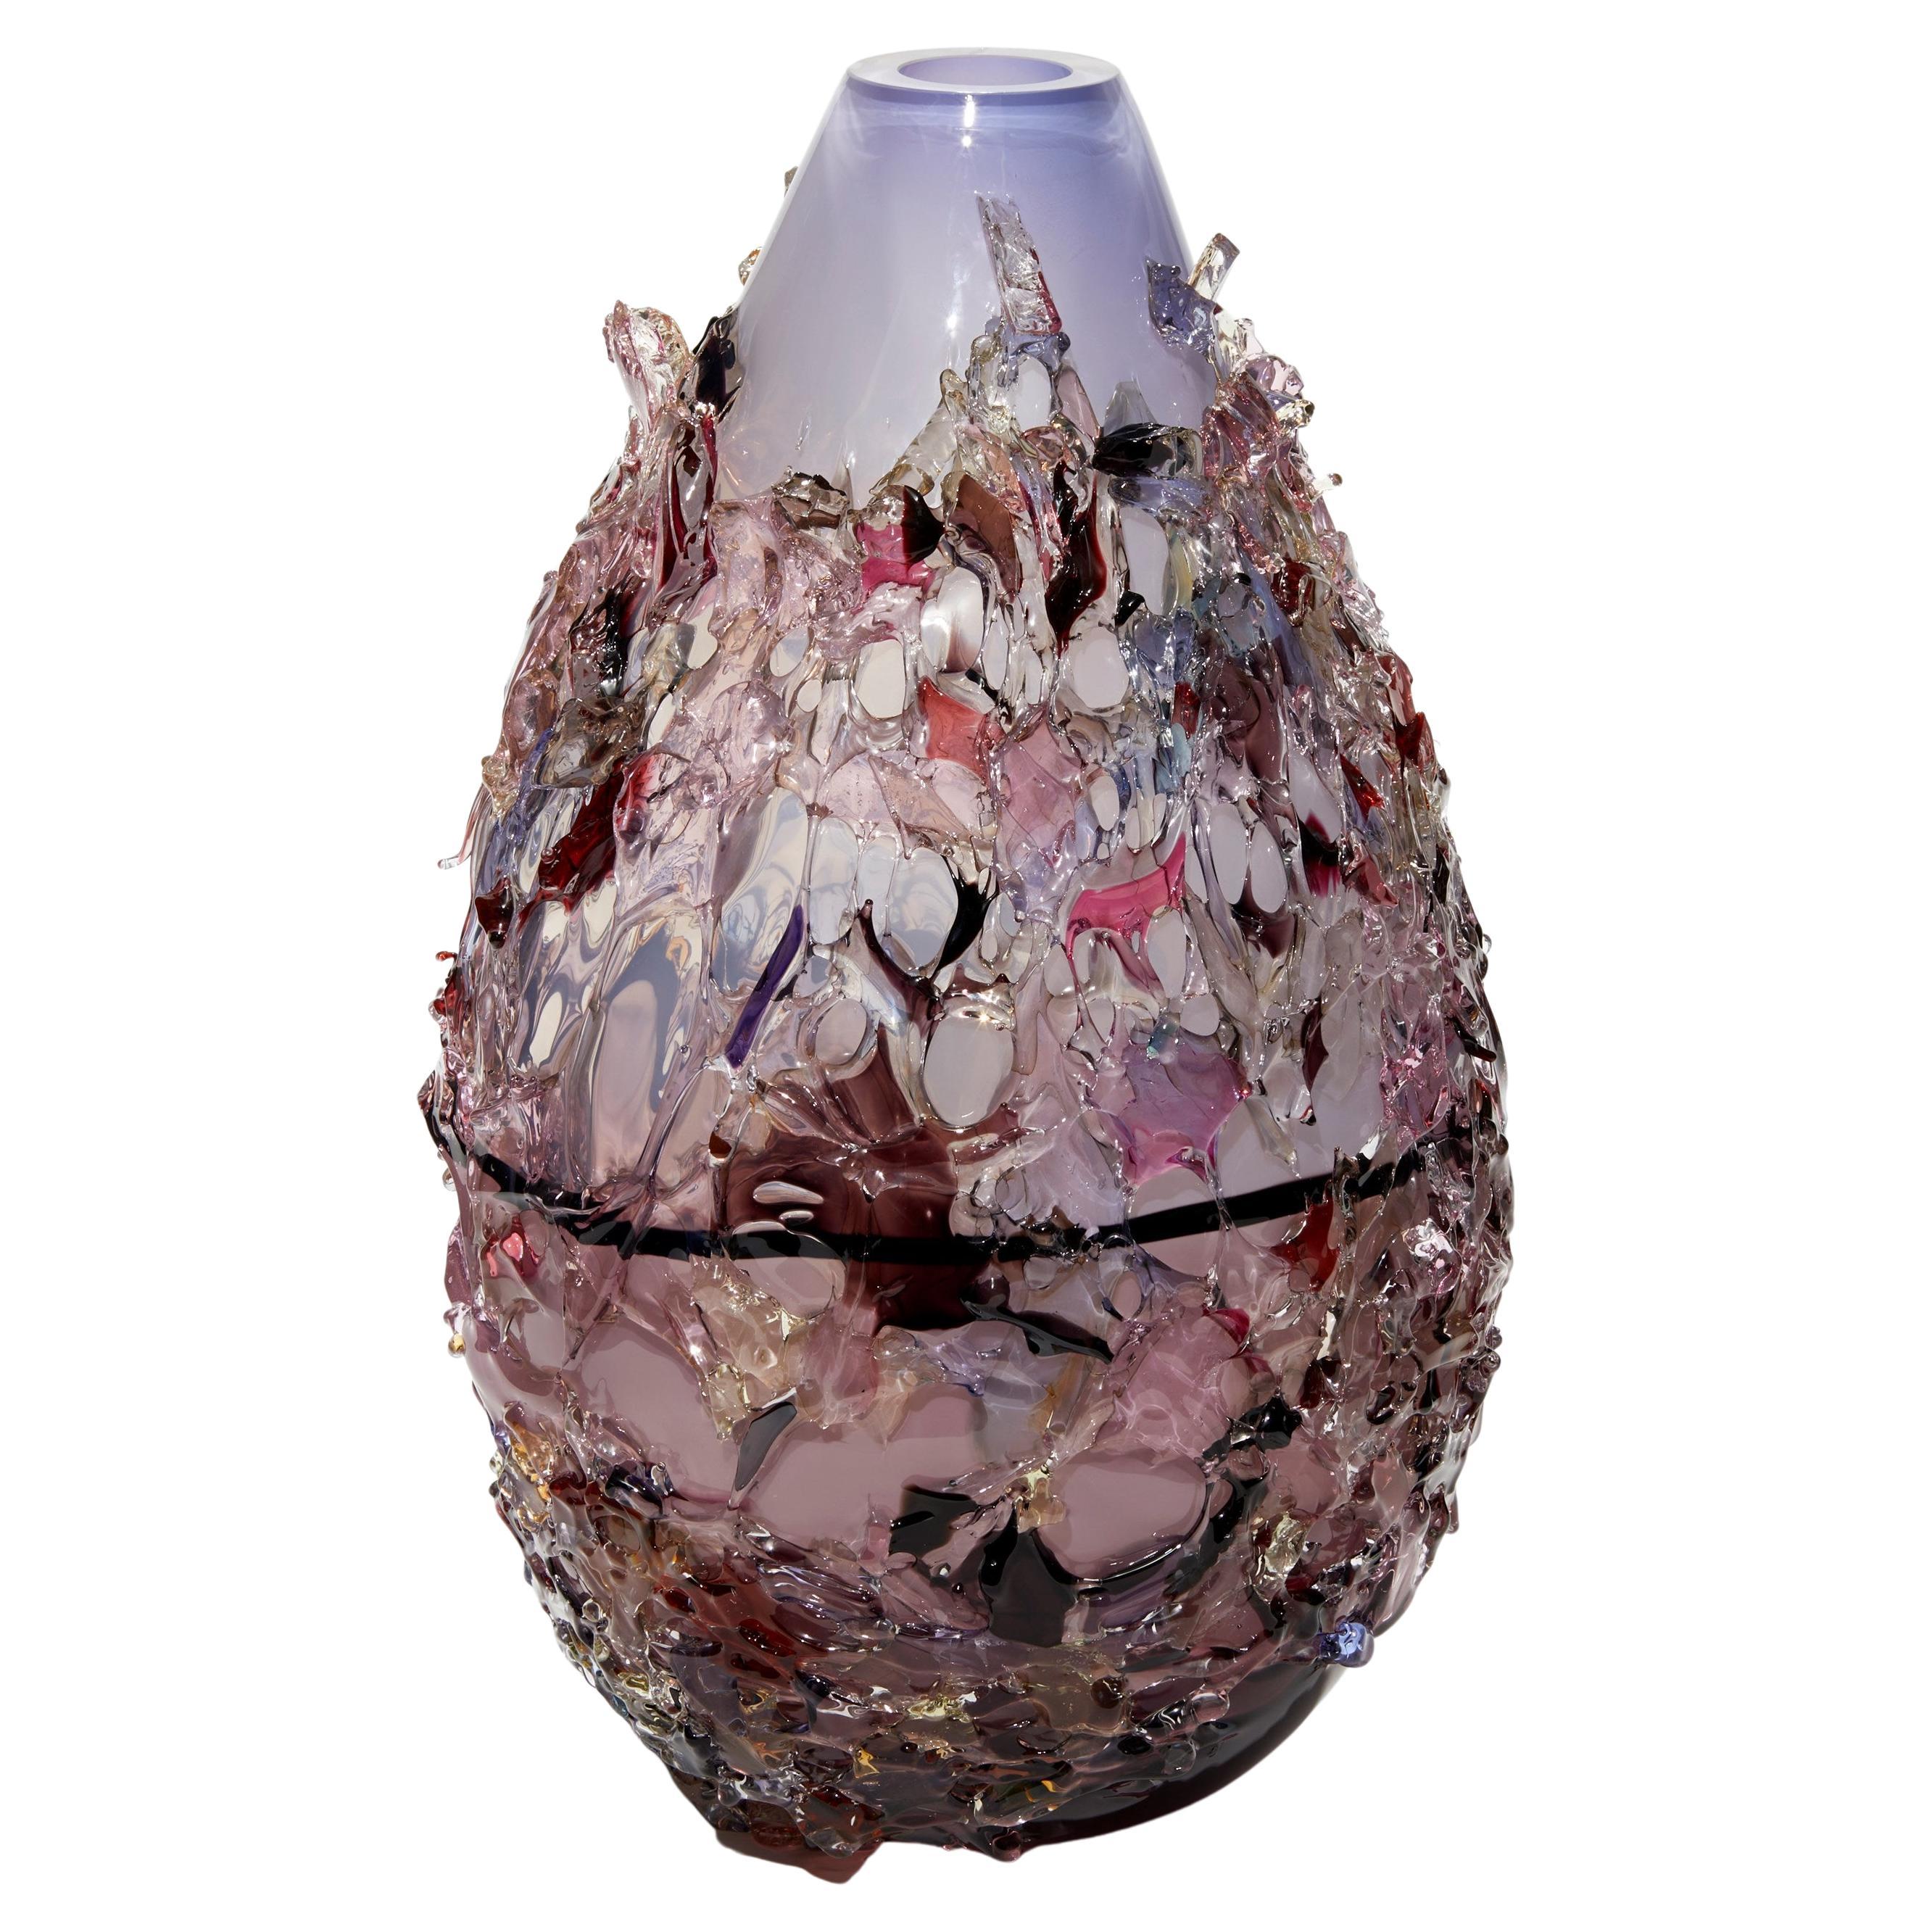 Sakura TRP22018, Vase in Aubergine, Lilac & Mixed Colors by Maarten Vrolijk